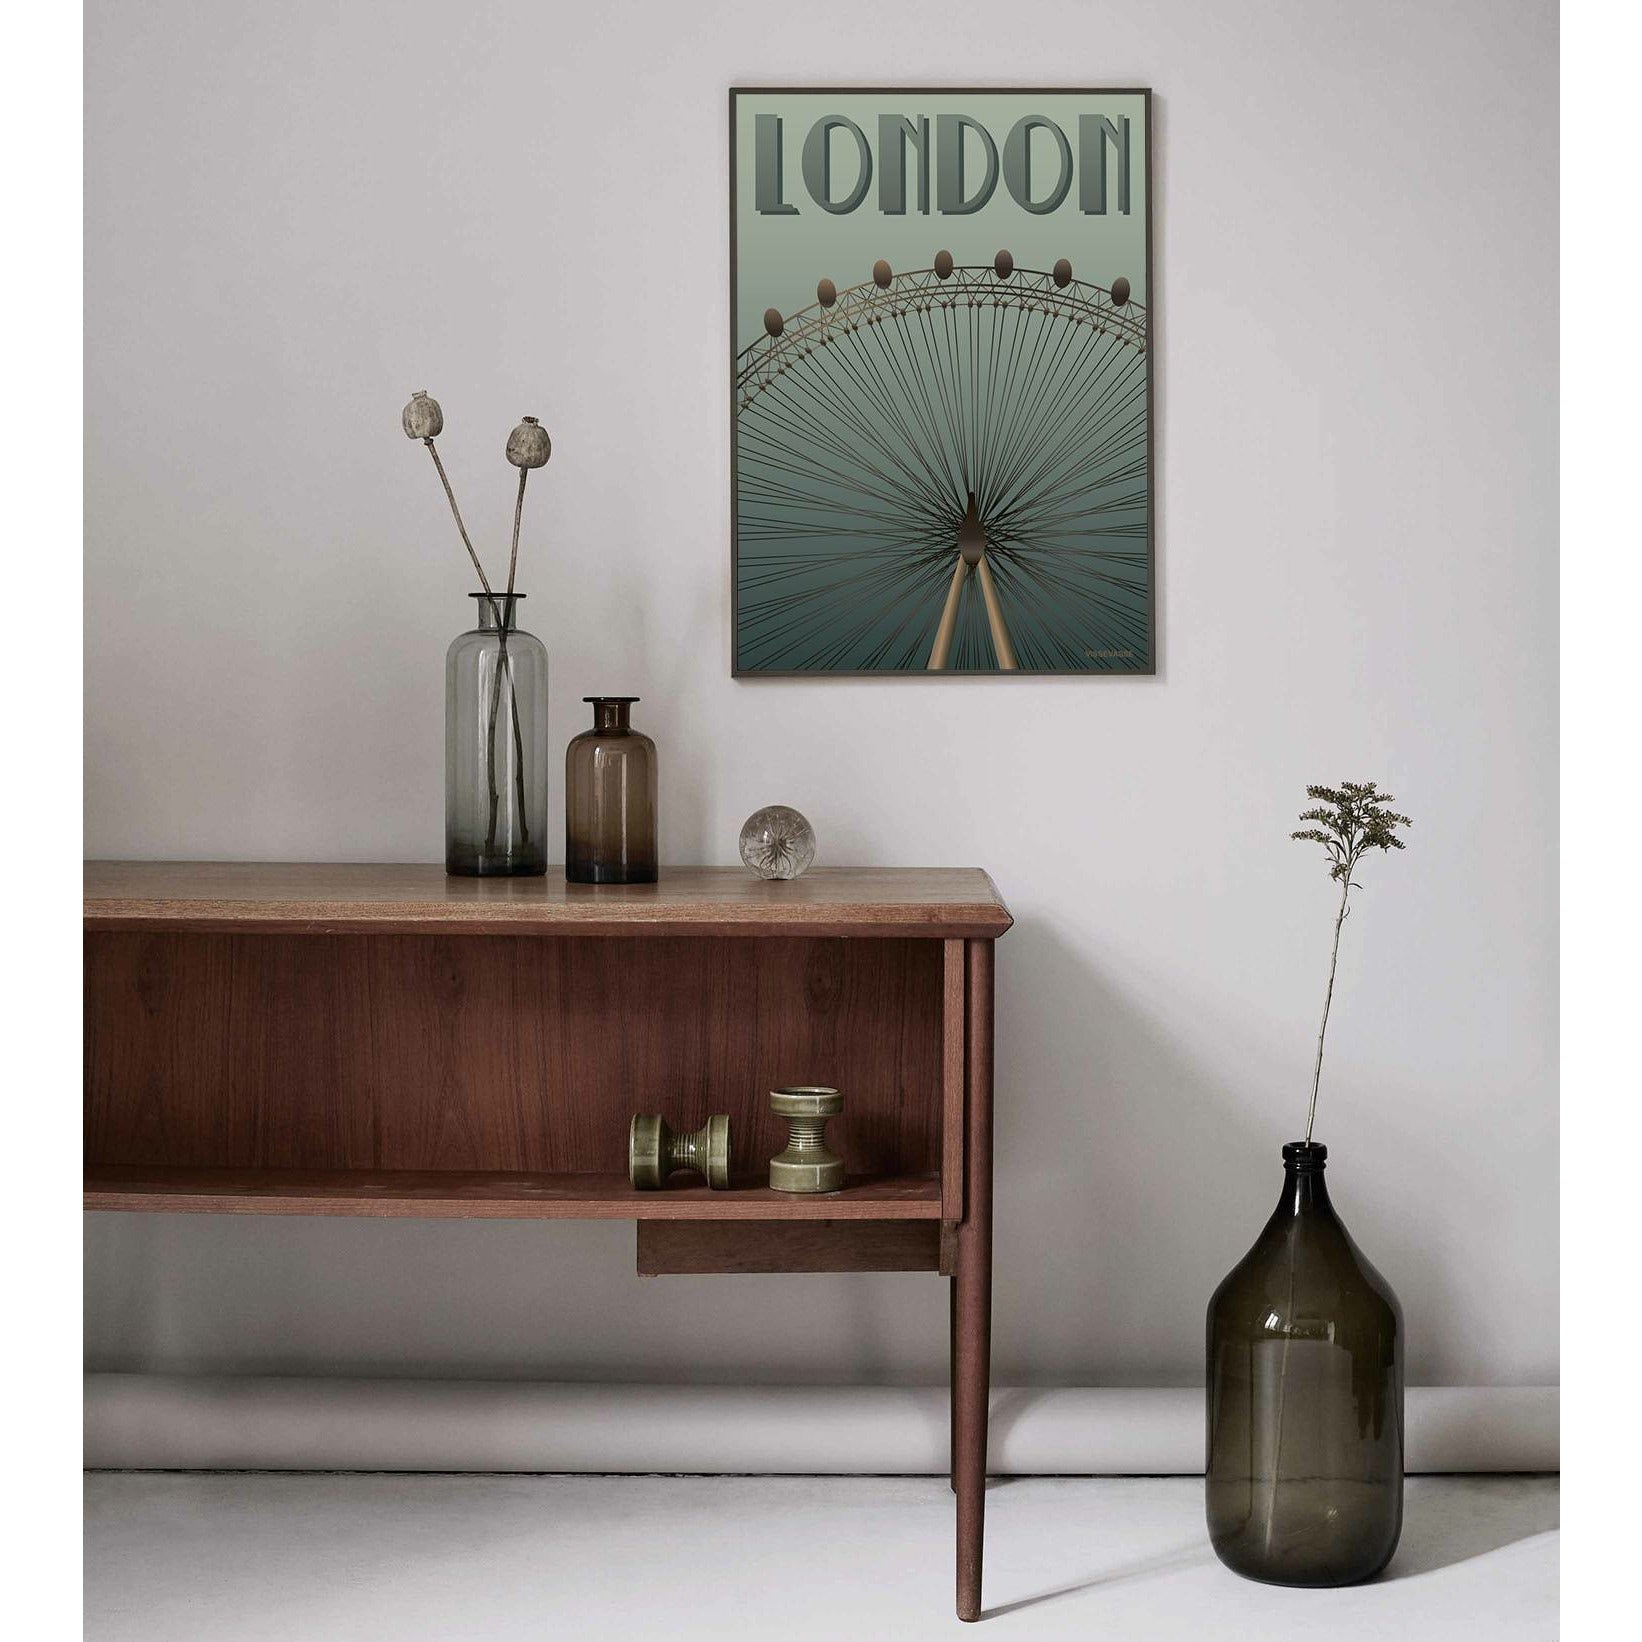 Vissevasse London Eye Poster, 30x40 cm